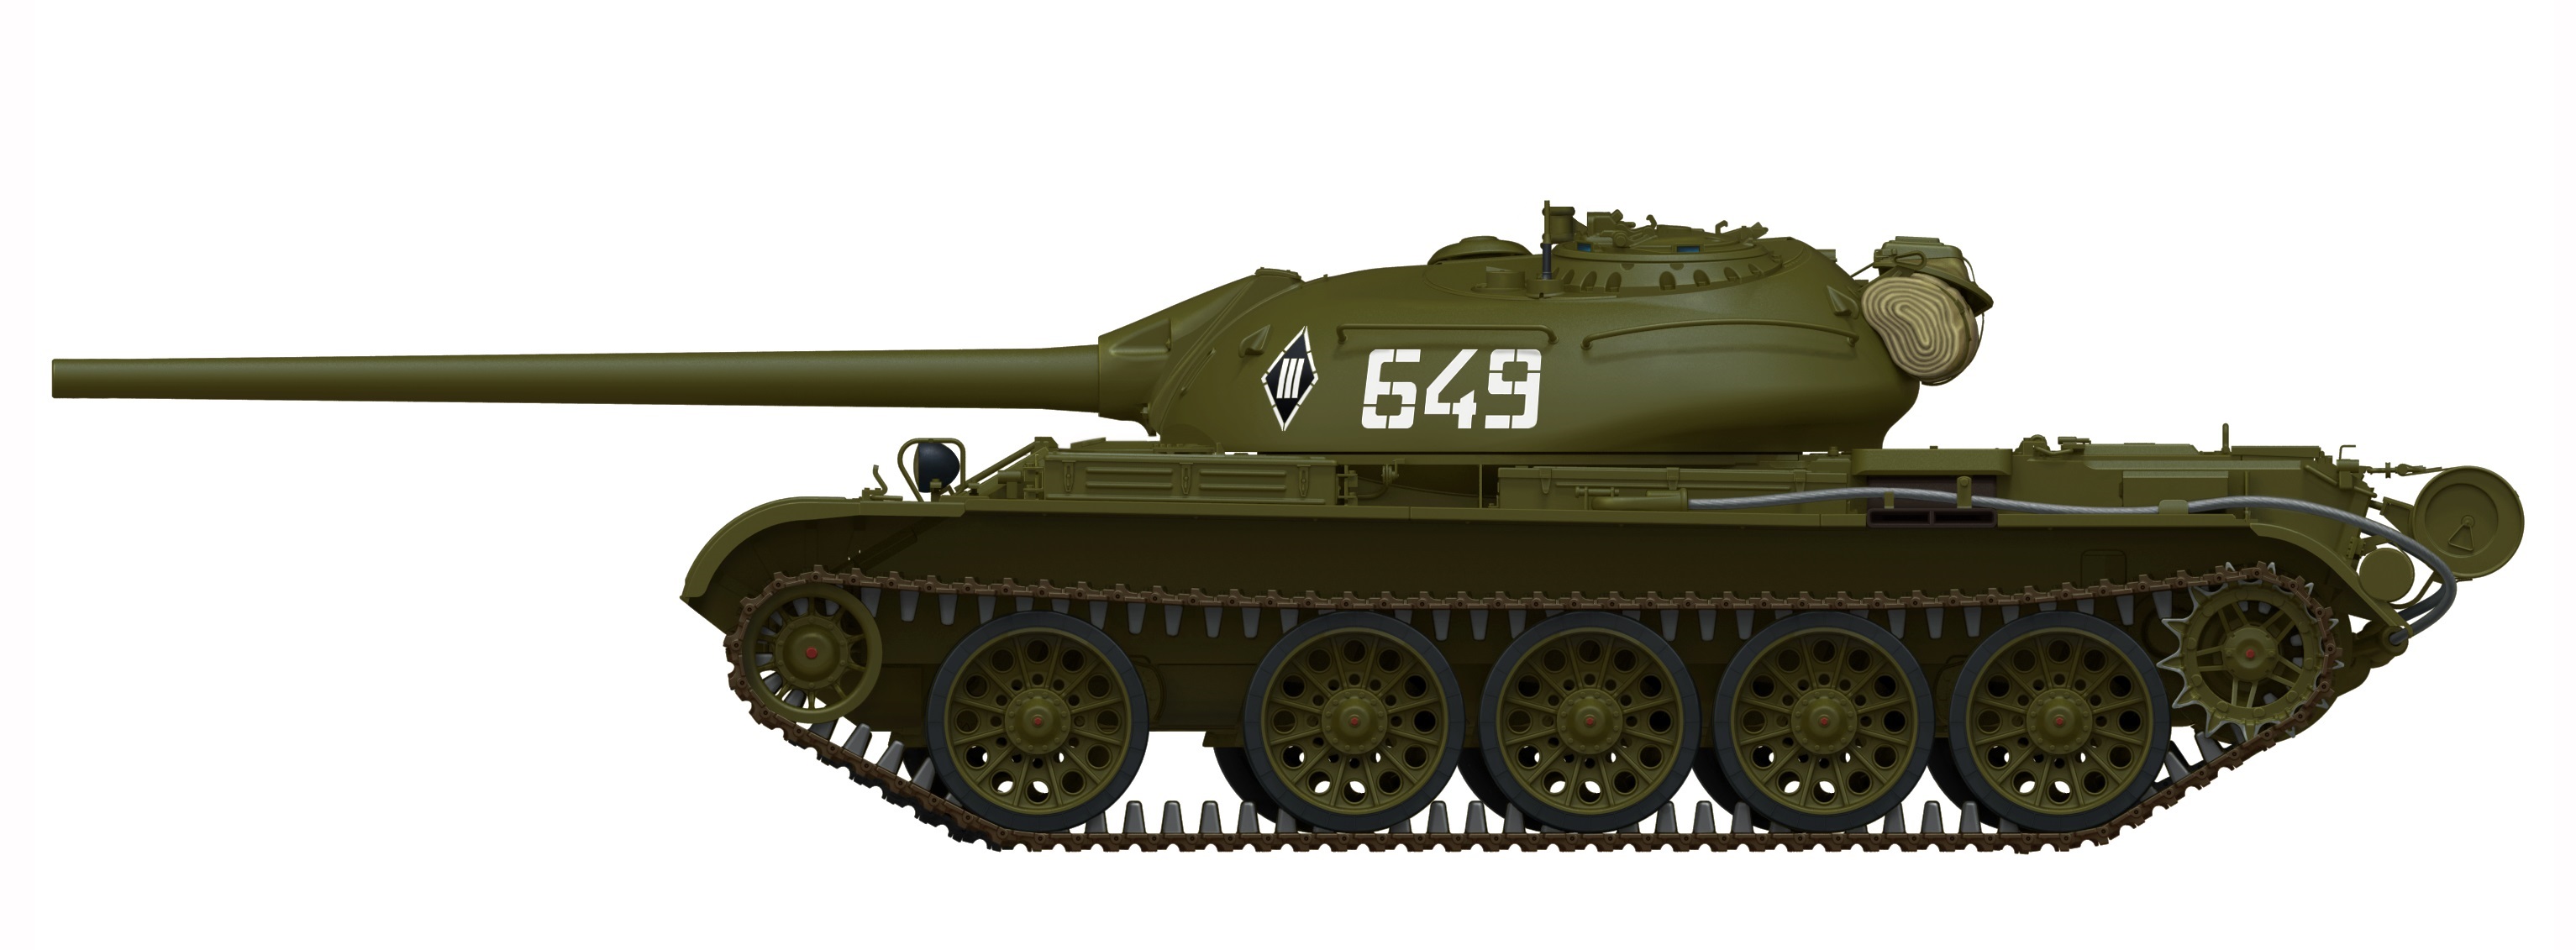 54 2 123 1. Т55 танк сбоку. Т 54 сбоку. Танк СССР Т-34 сбоку. Т2 танк сбоку.